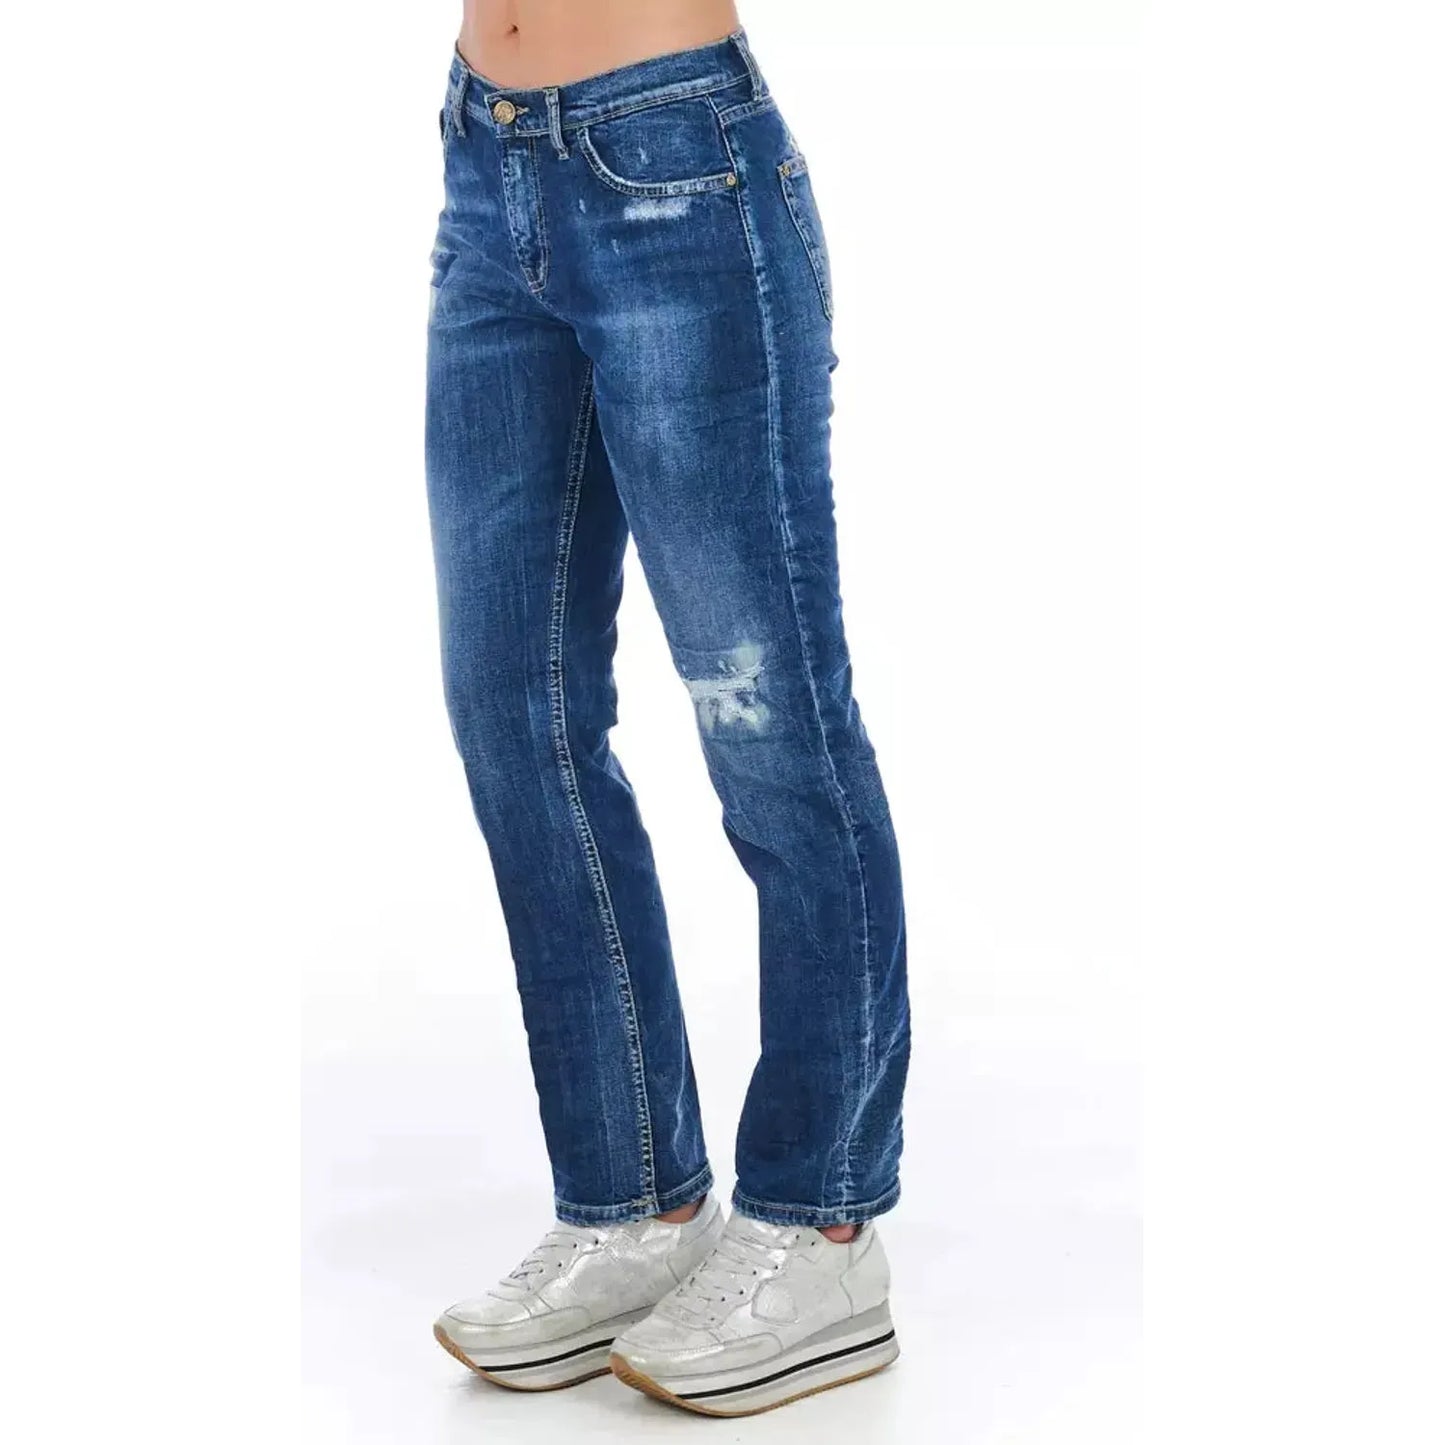 Frankie Morello Blue Cotton Blend Worn Wash Jeans blue-cotton-jeans-pant-51 stock_product_image_21765_1348890531-23-45401ac5-a6f.webp